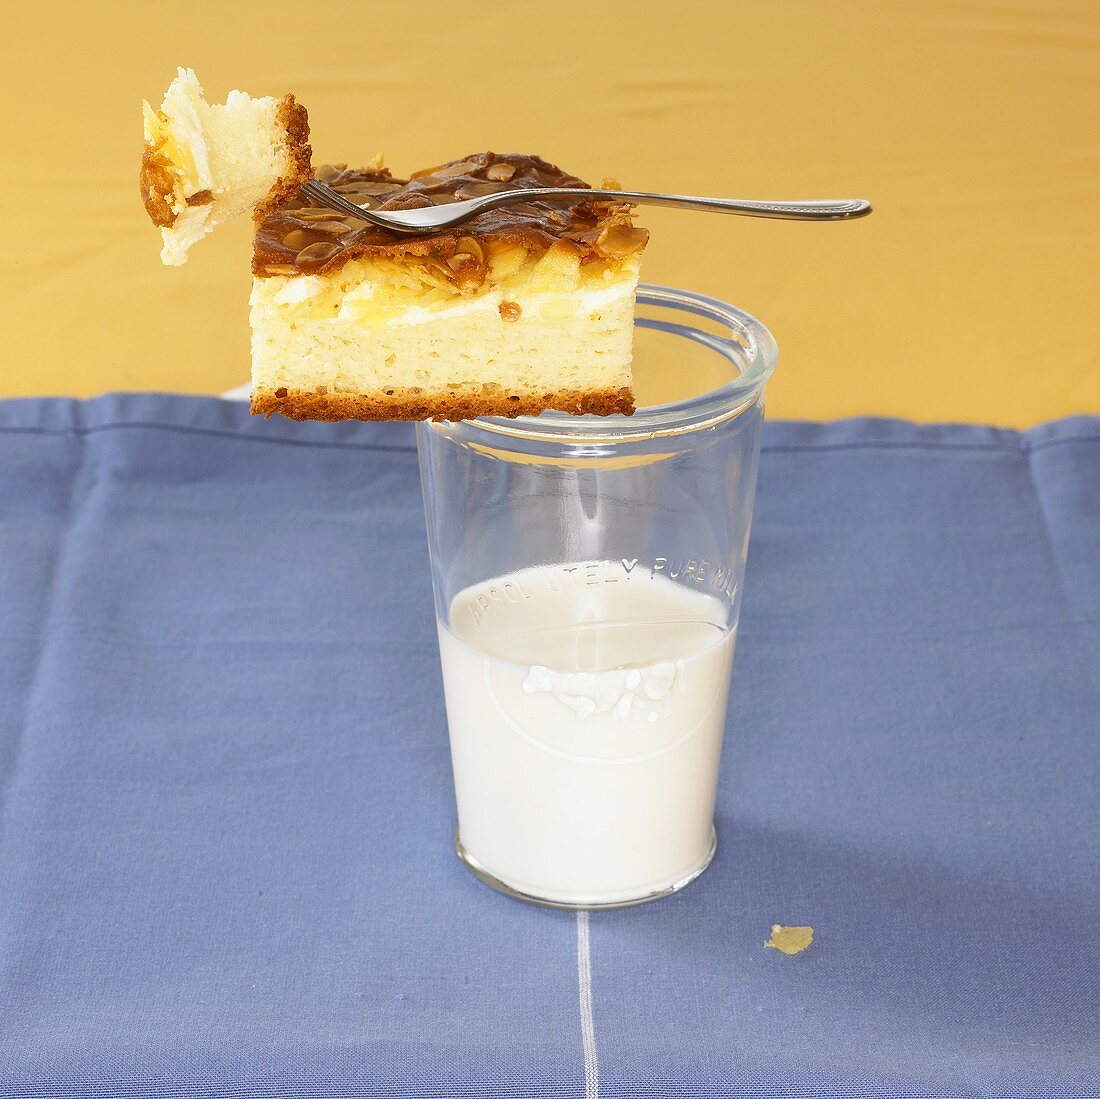 Piece of Eierschecke (egg custard cake) on glass of milk